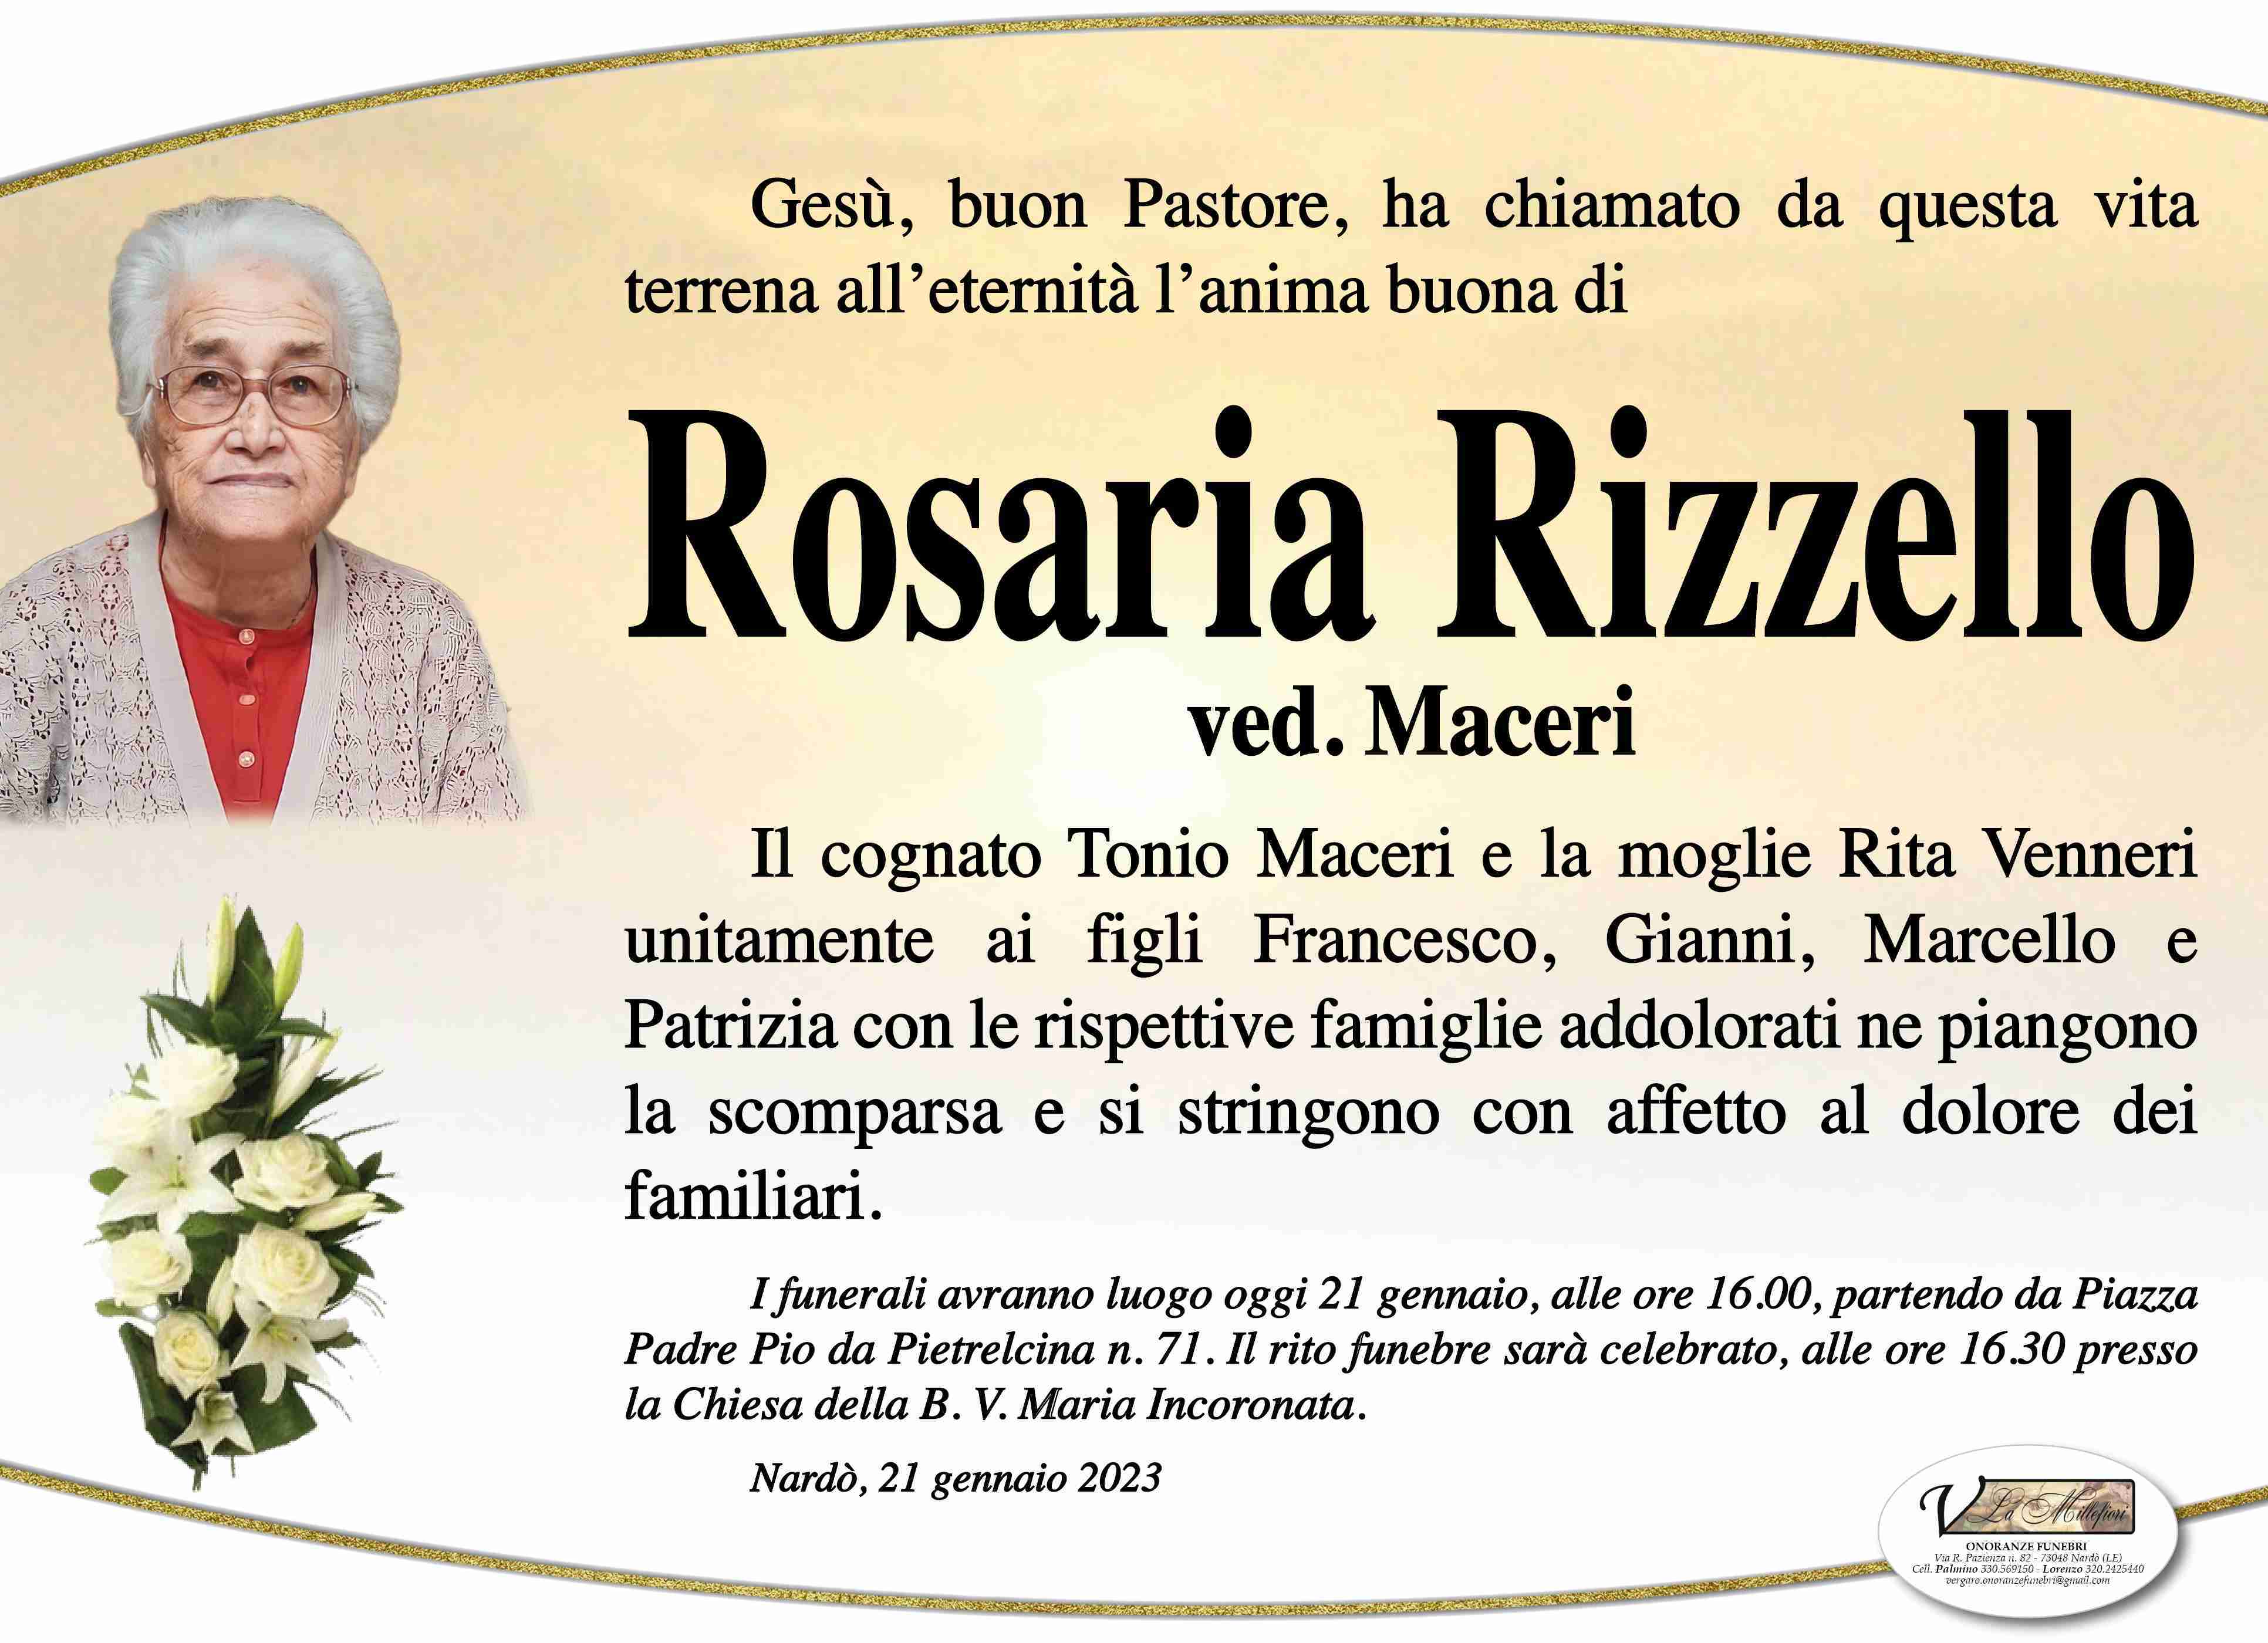 Rosaria Rizzello